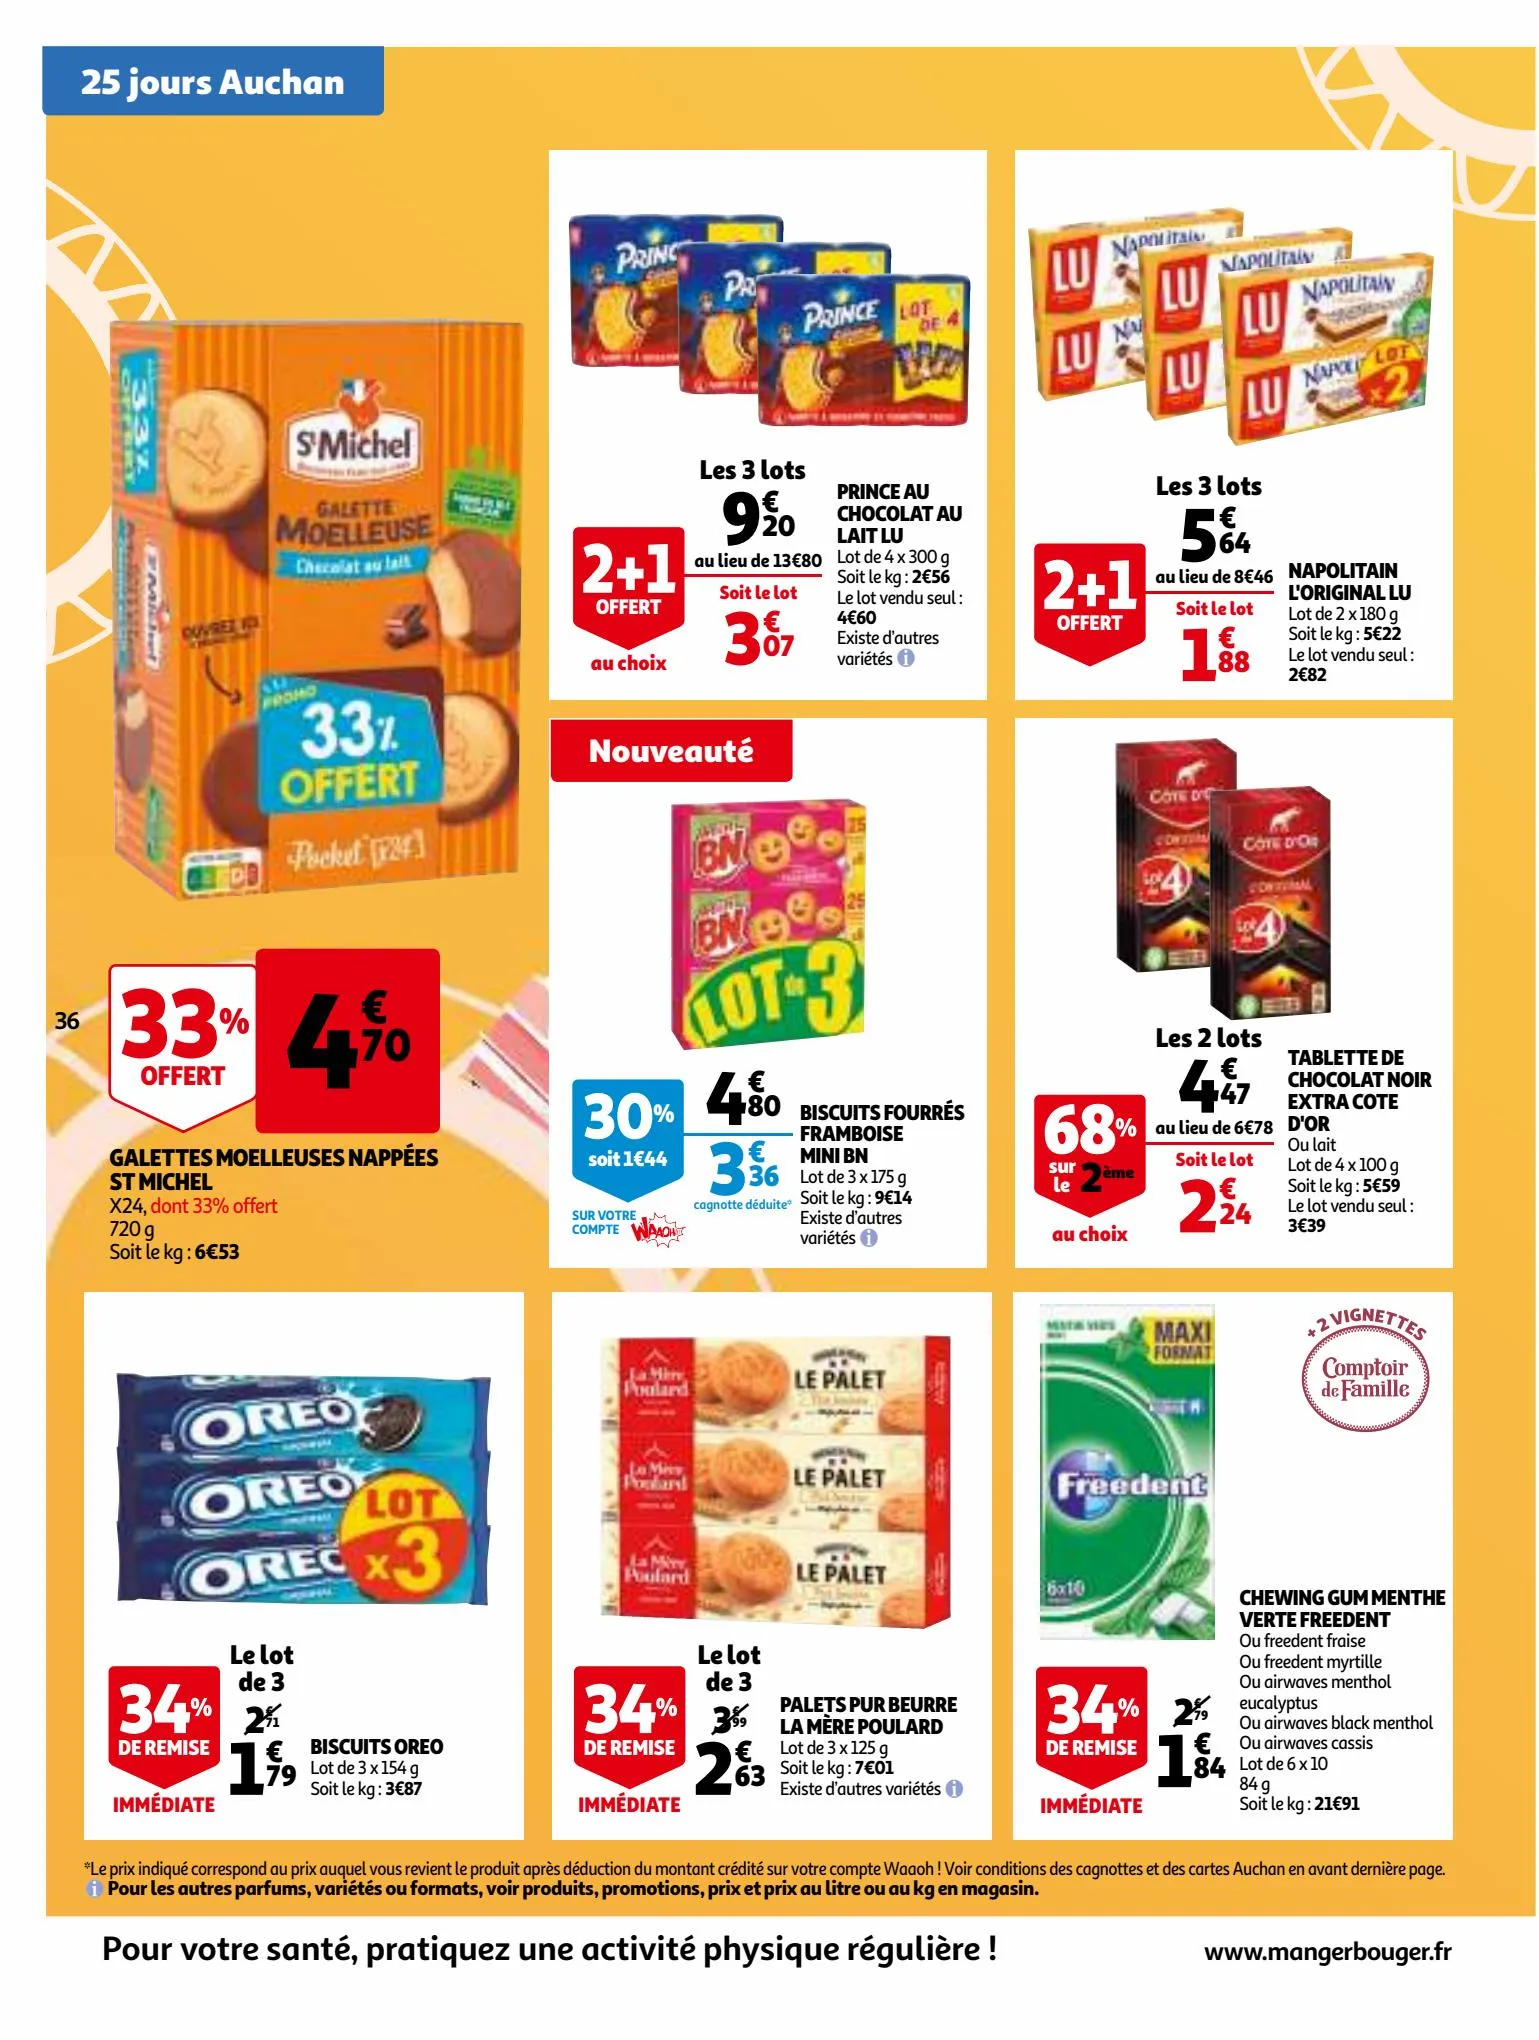 Catalogue 25 Jours Auchan, page 00036